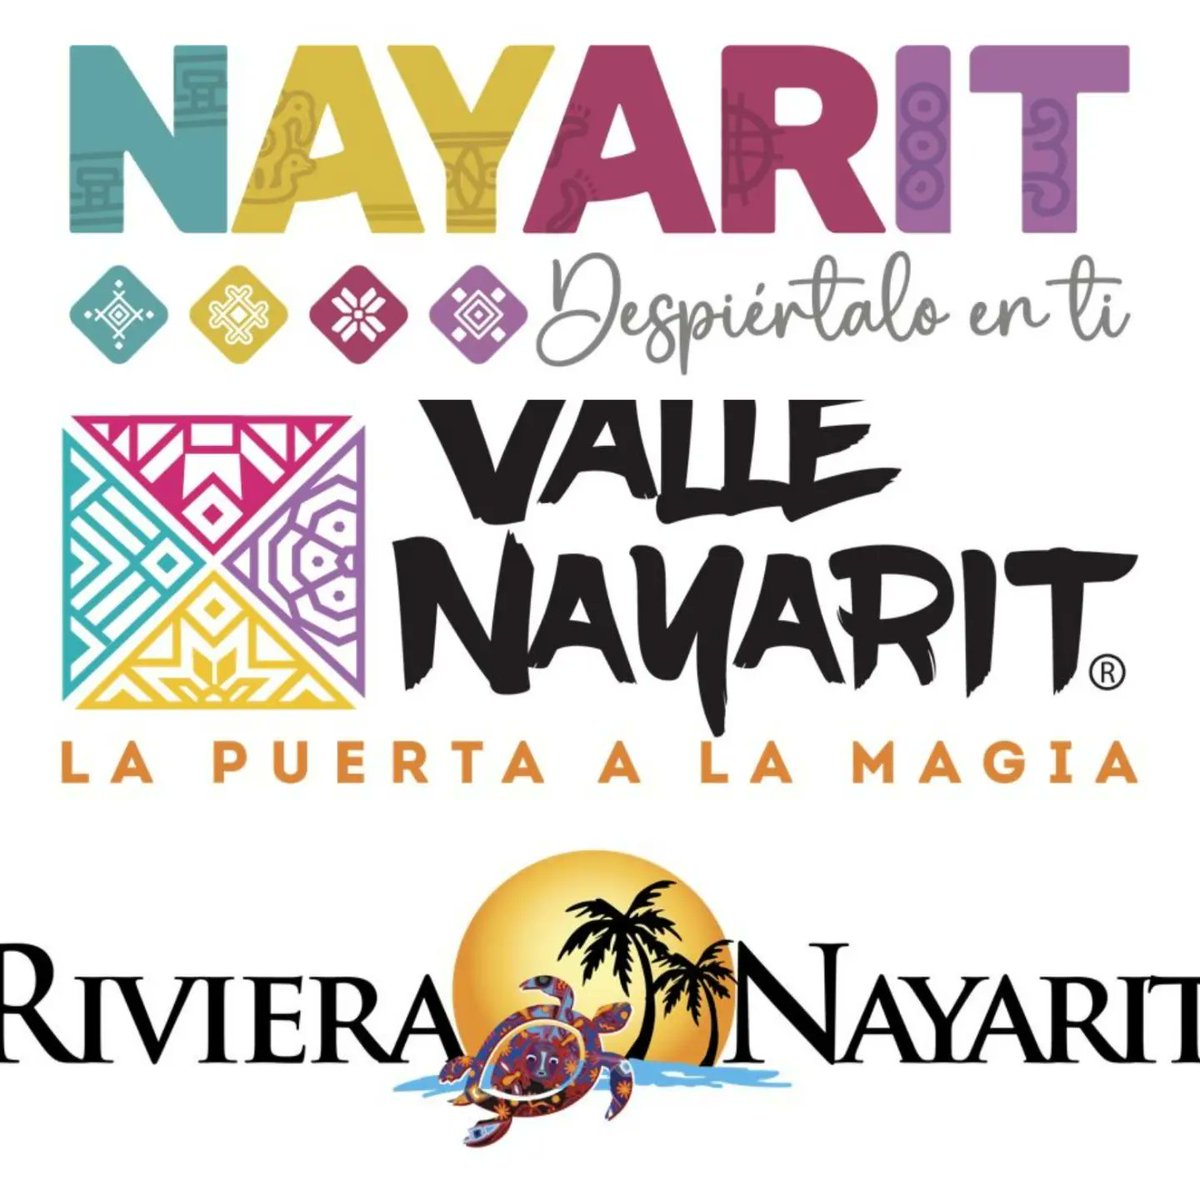 NAYARIT, estado invitado al Barcelona Vive México! 🇲🇽✈️ El estado de Nayarit se convierte este año en el Estado invitado al Festival Barcelona Vive México gracias al acuerdo a que ha llegado Mexcat con la @SecturNayarit Hilo